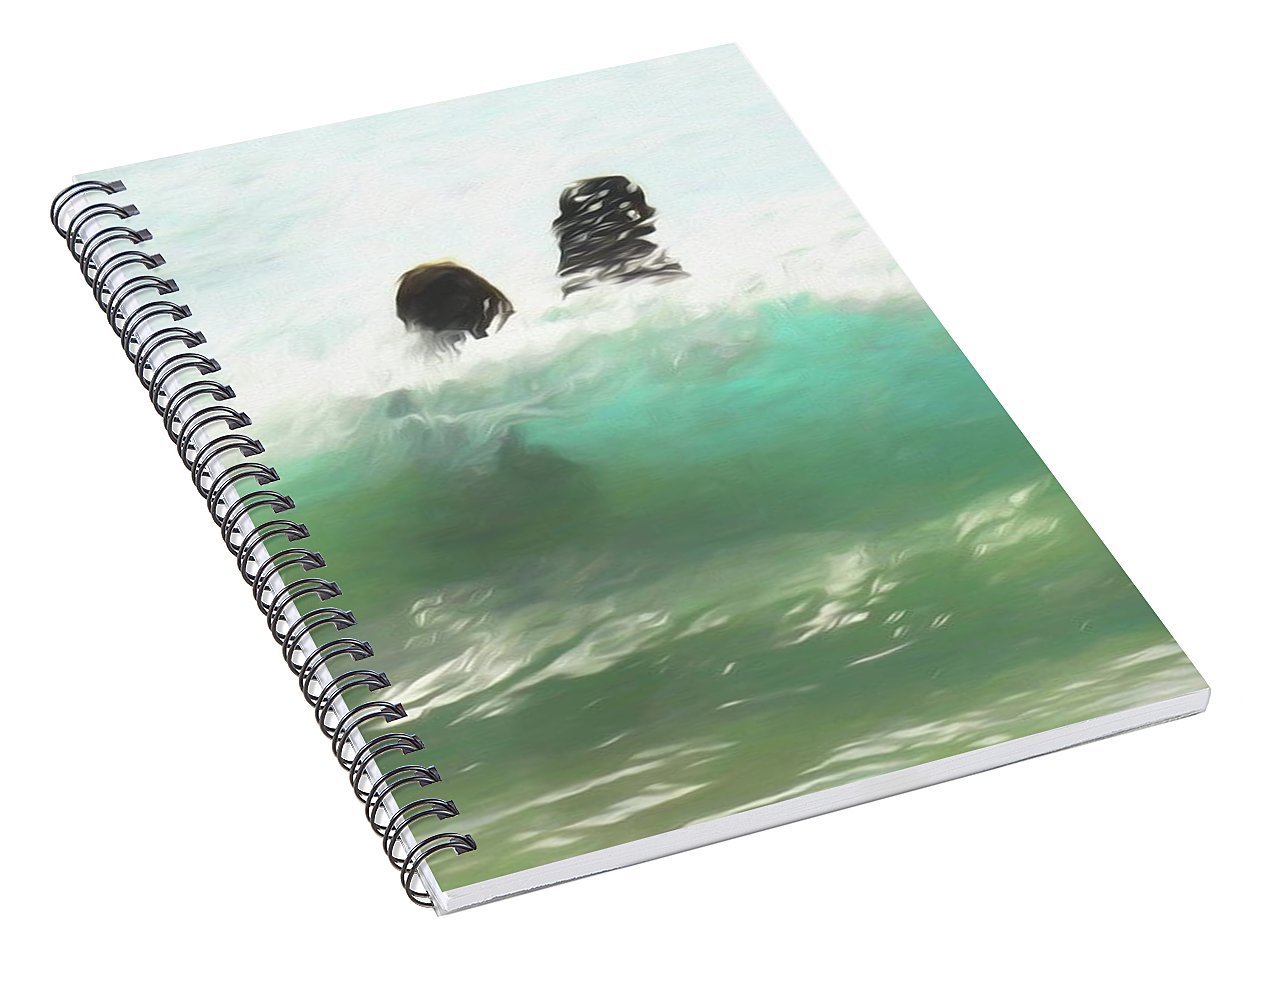 Still Taller Than The Waves - Spiral Notebook